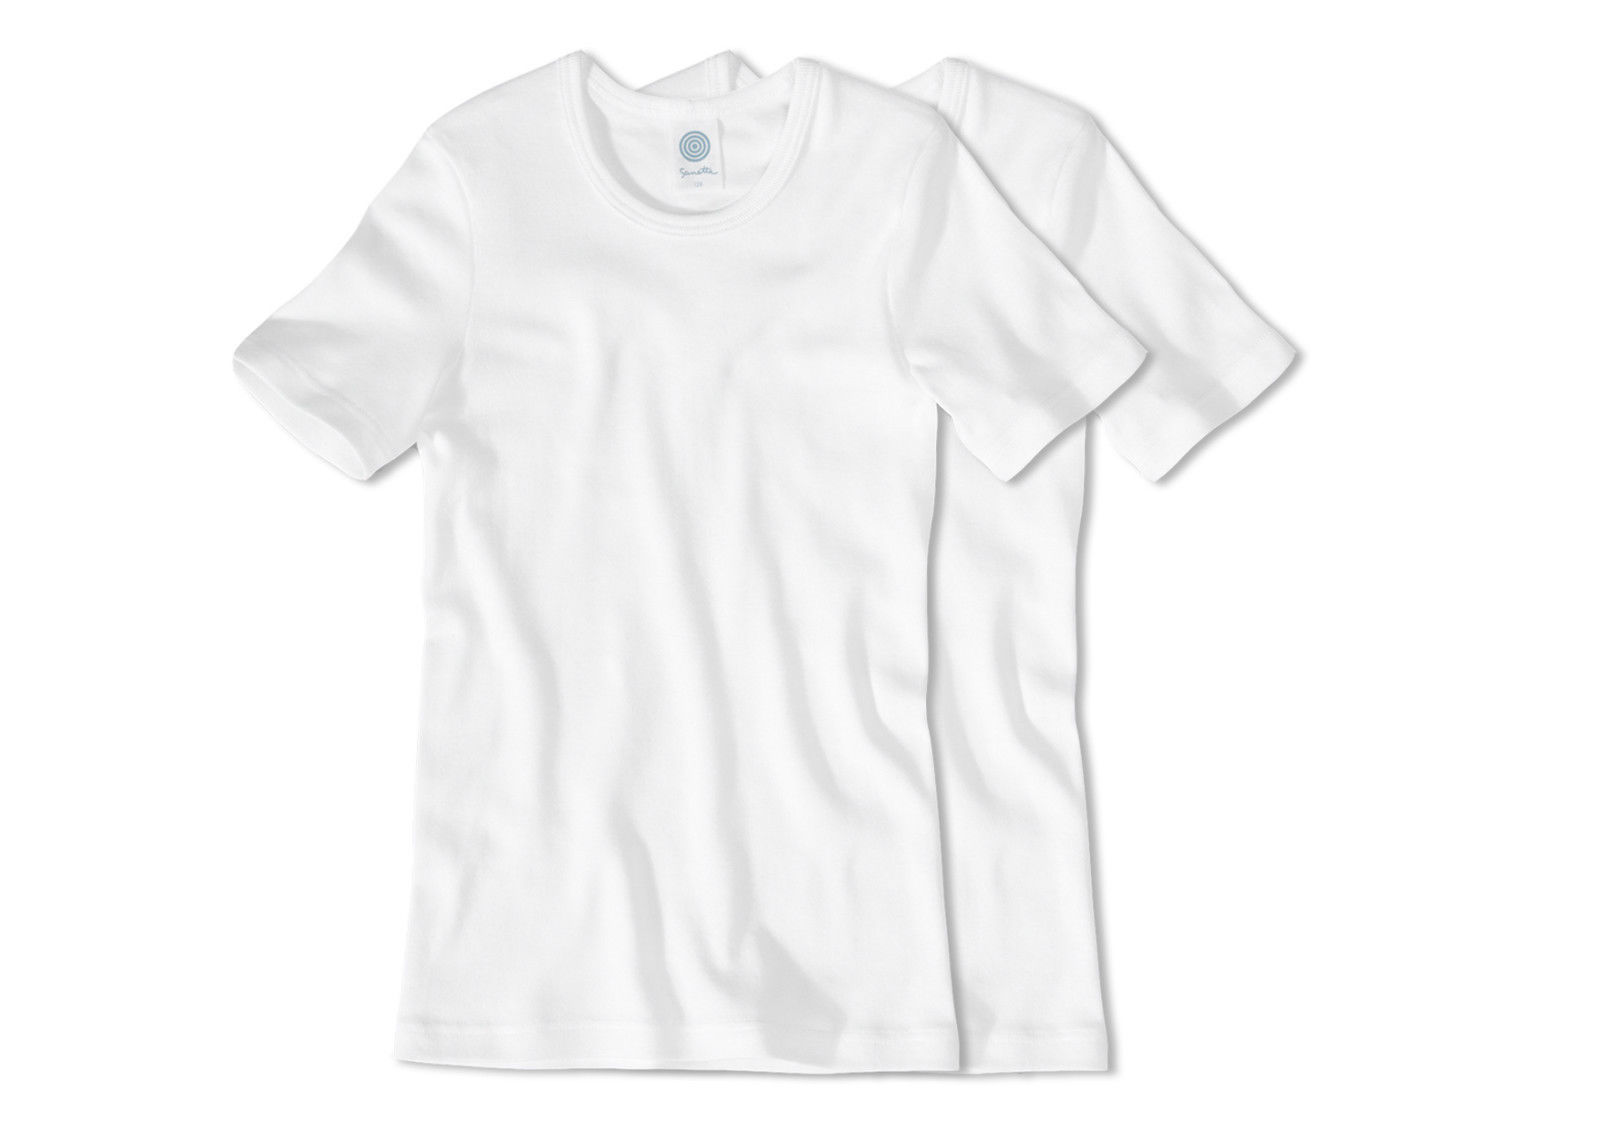 Sanetta Jungen T-Shirt halbarm im Doppelpack 300100-10, weiß